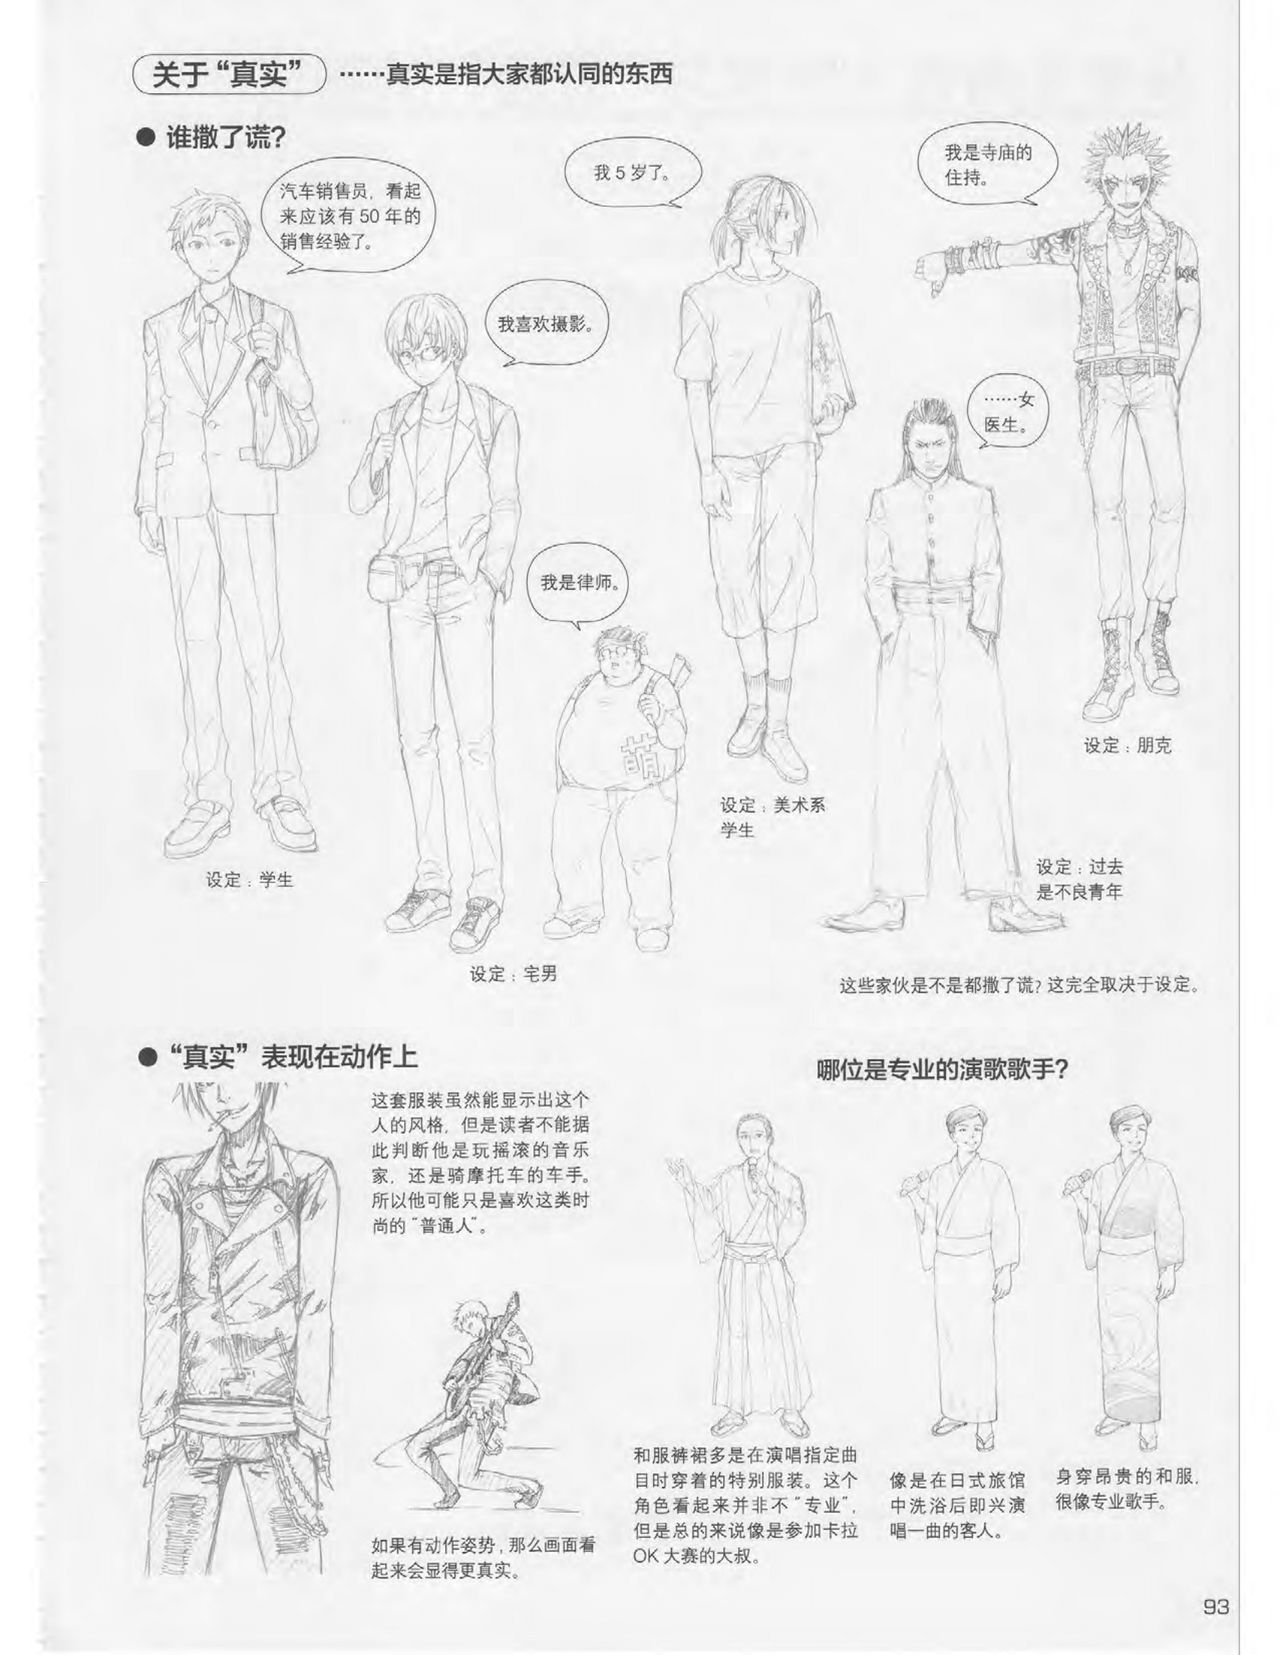 Japanese Manga Master Lecture 3: Lin Akira and Kakumaru Maru Talk About Glamorous Character Modeling 93